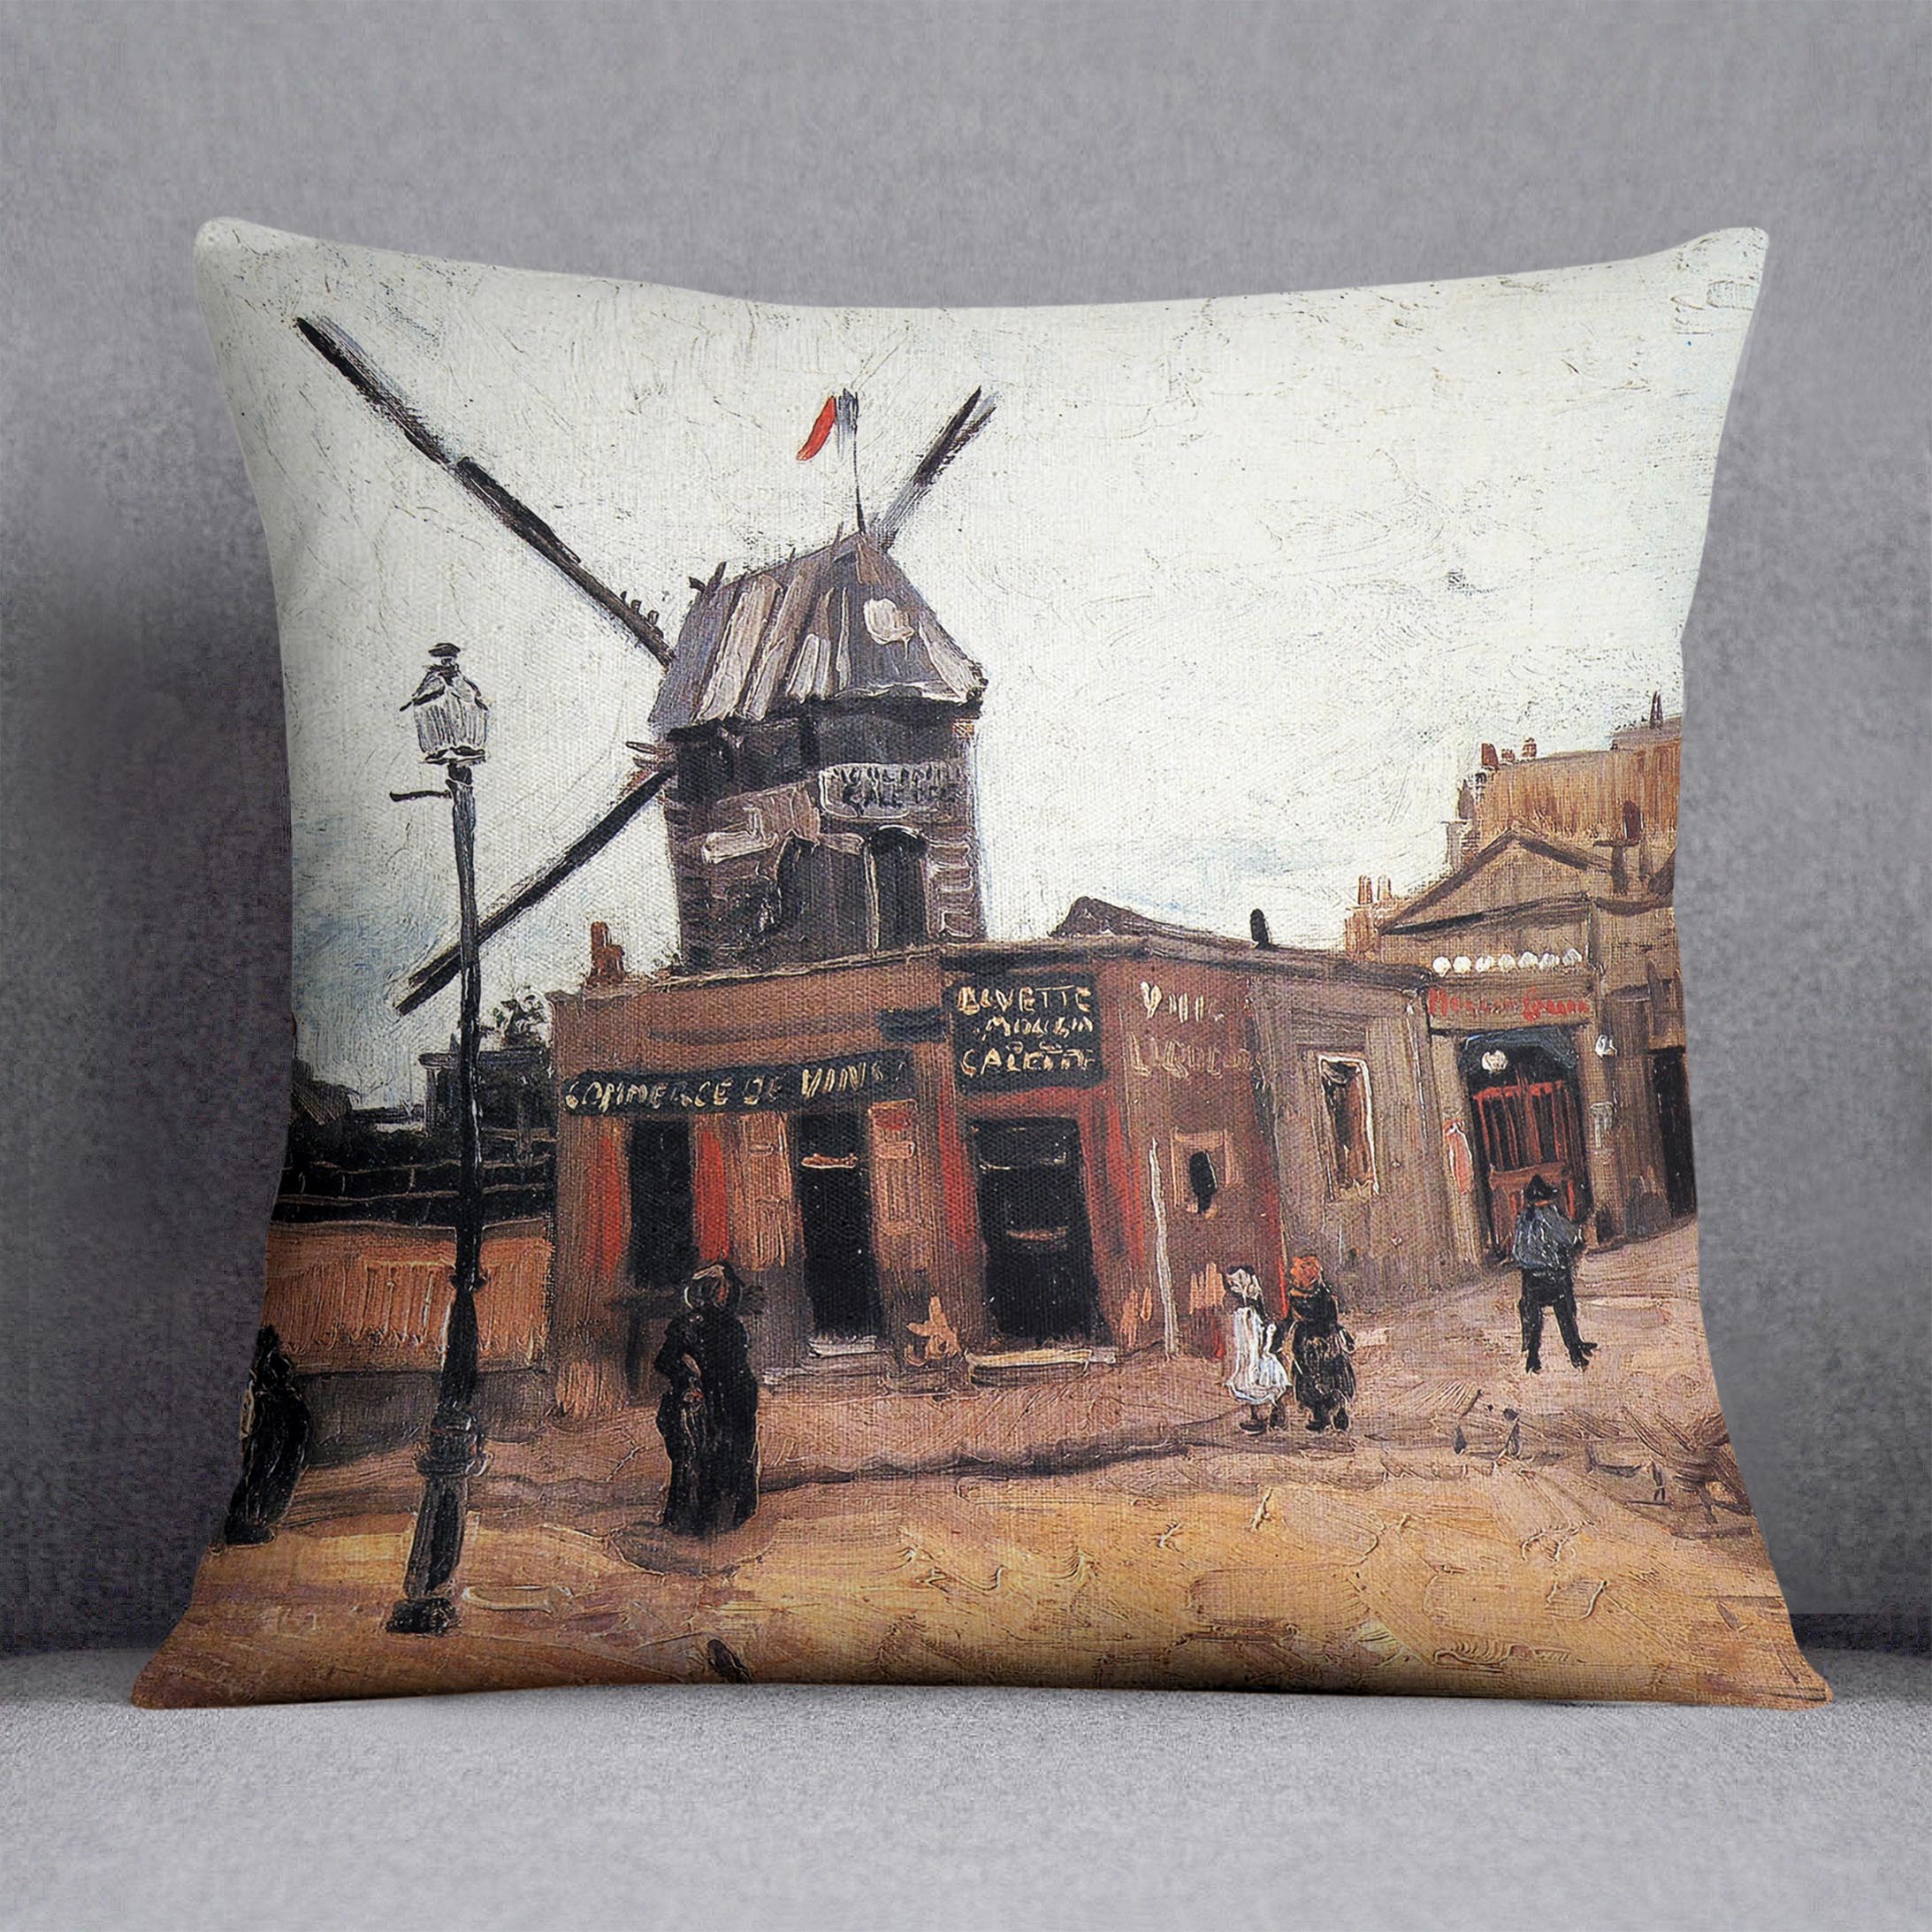 Le Moulin de la Galette 3 by Van Gogh Cushion